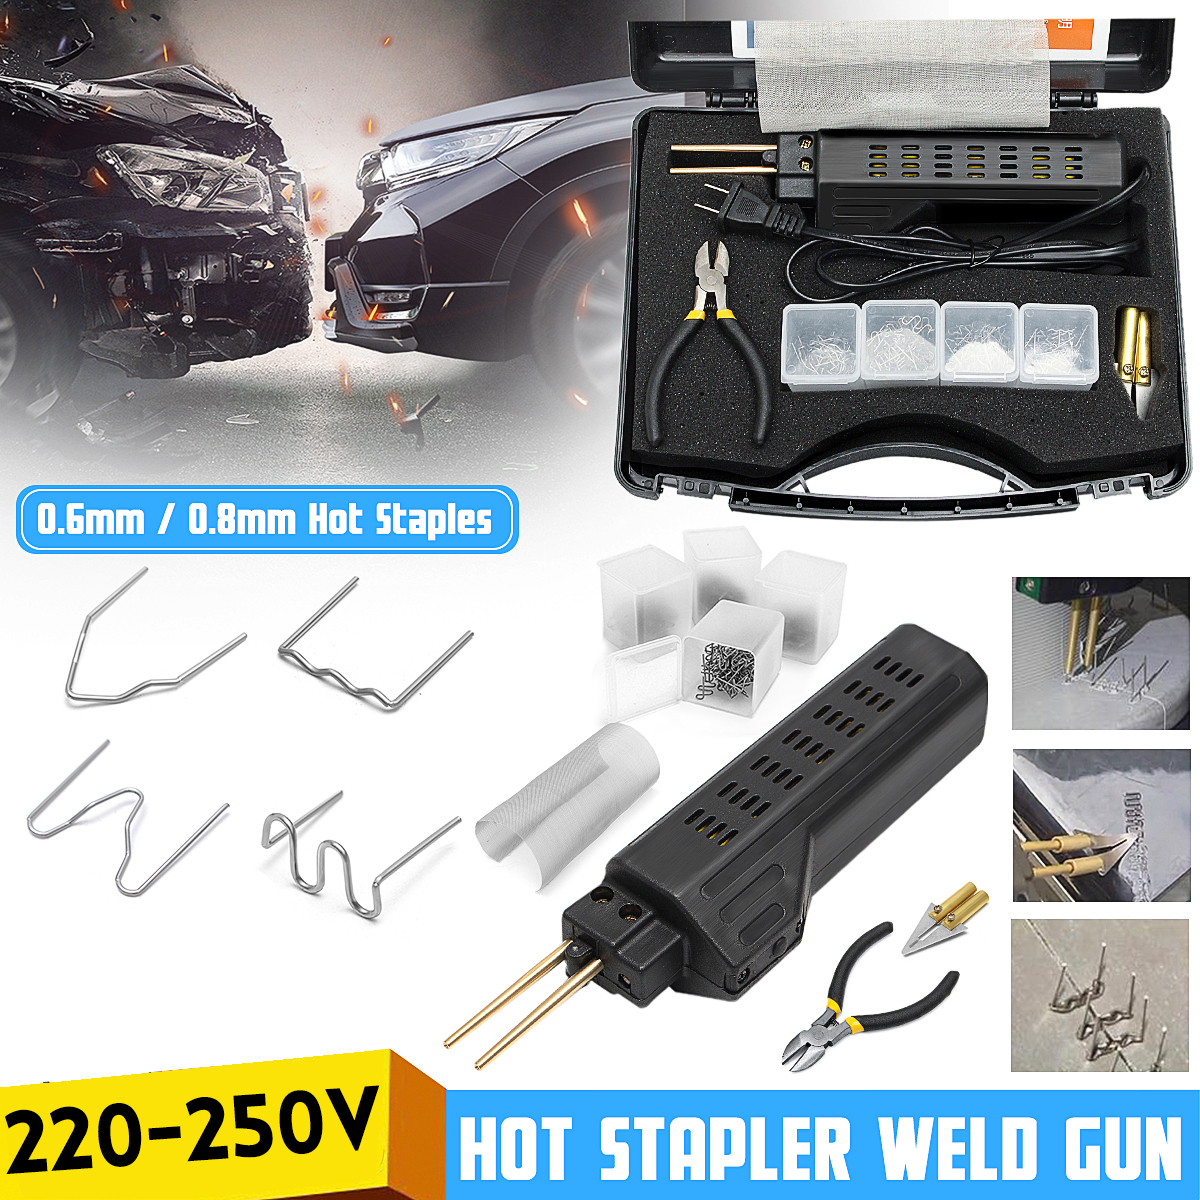 600pcs 0.6/0.8mm Hot Stapler Staples For Car Bumper Fender Welder Plastic Repair